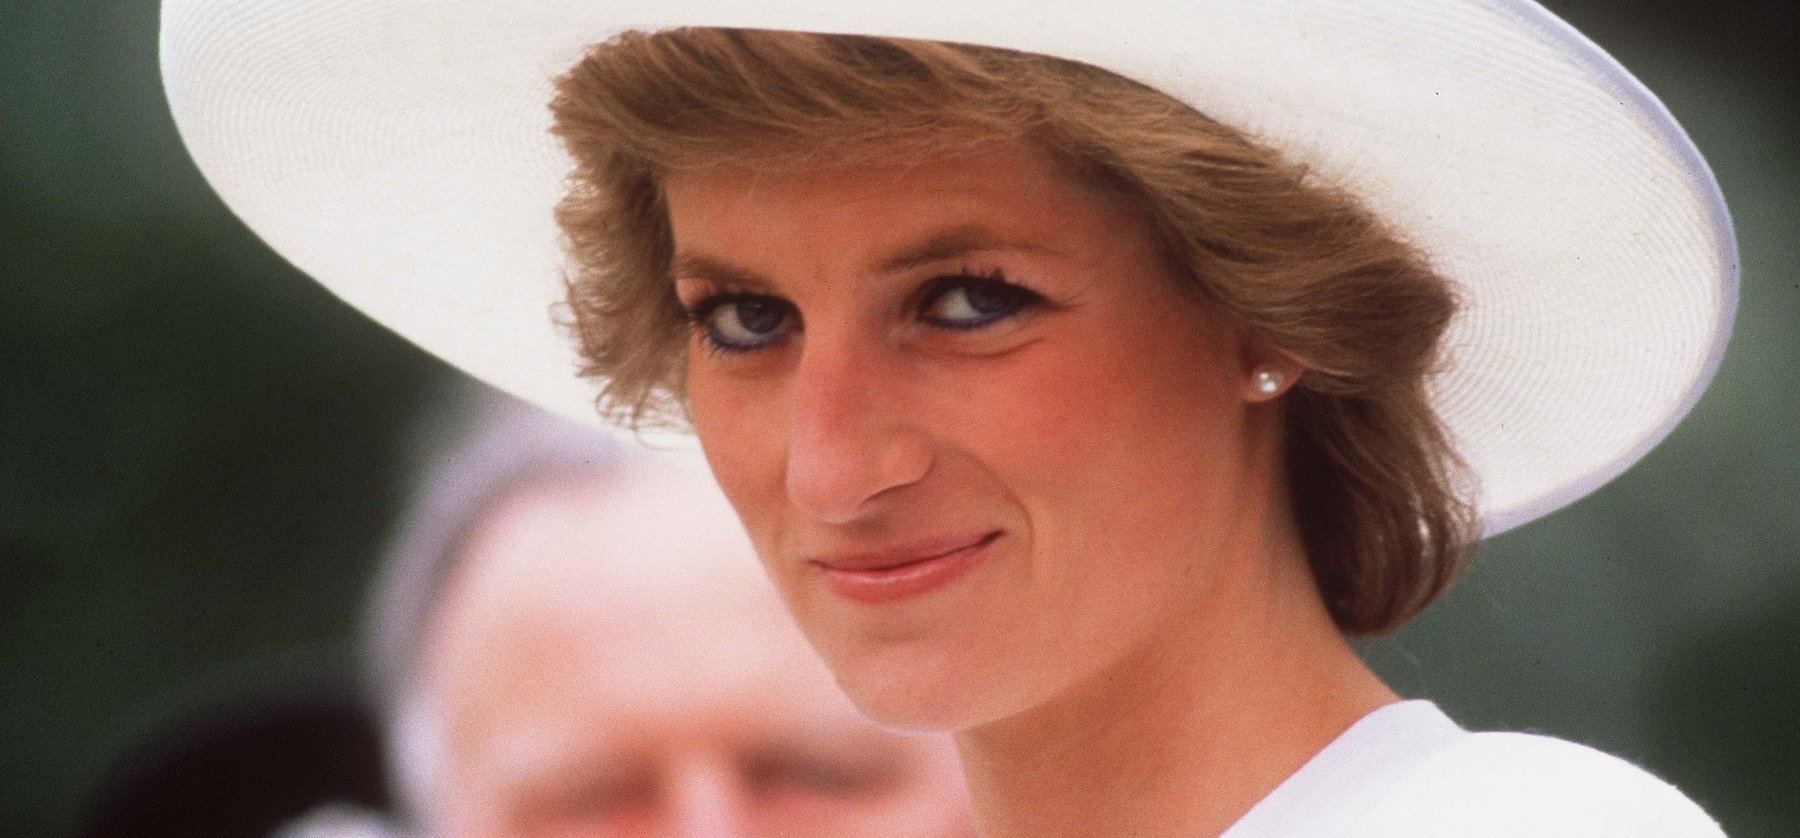 Diana nem halt meg, csak bujkál - a hercegné autóbalesete megrendezett volt a fiatal Harry szerint